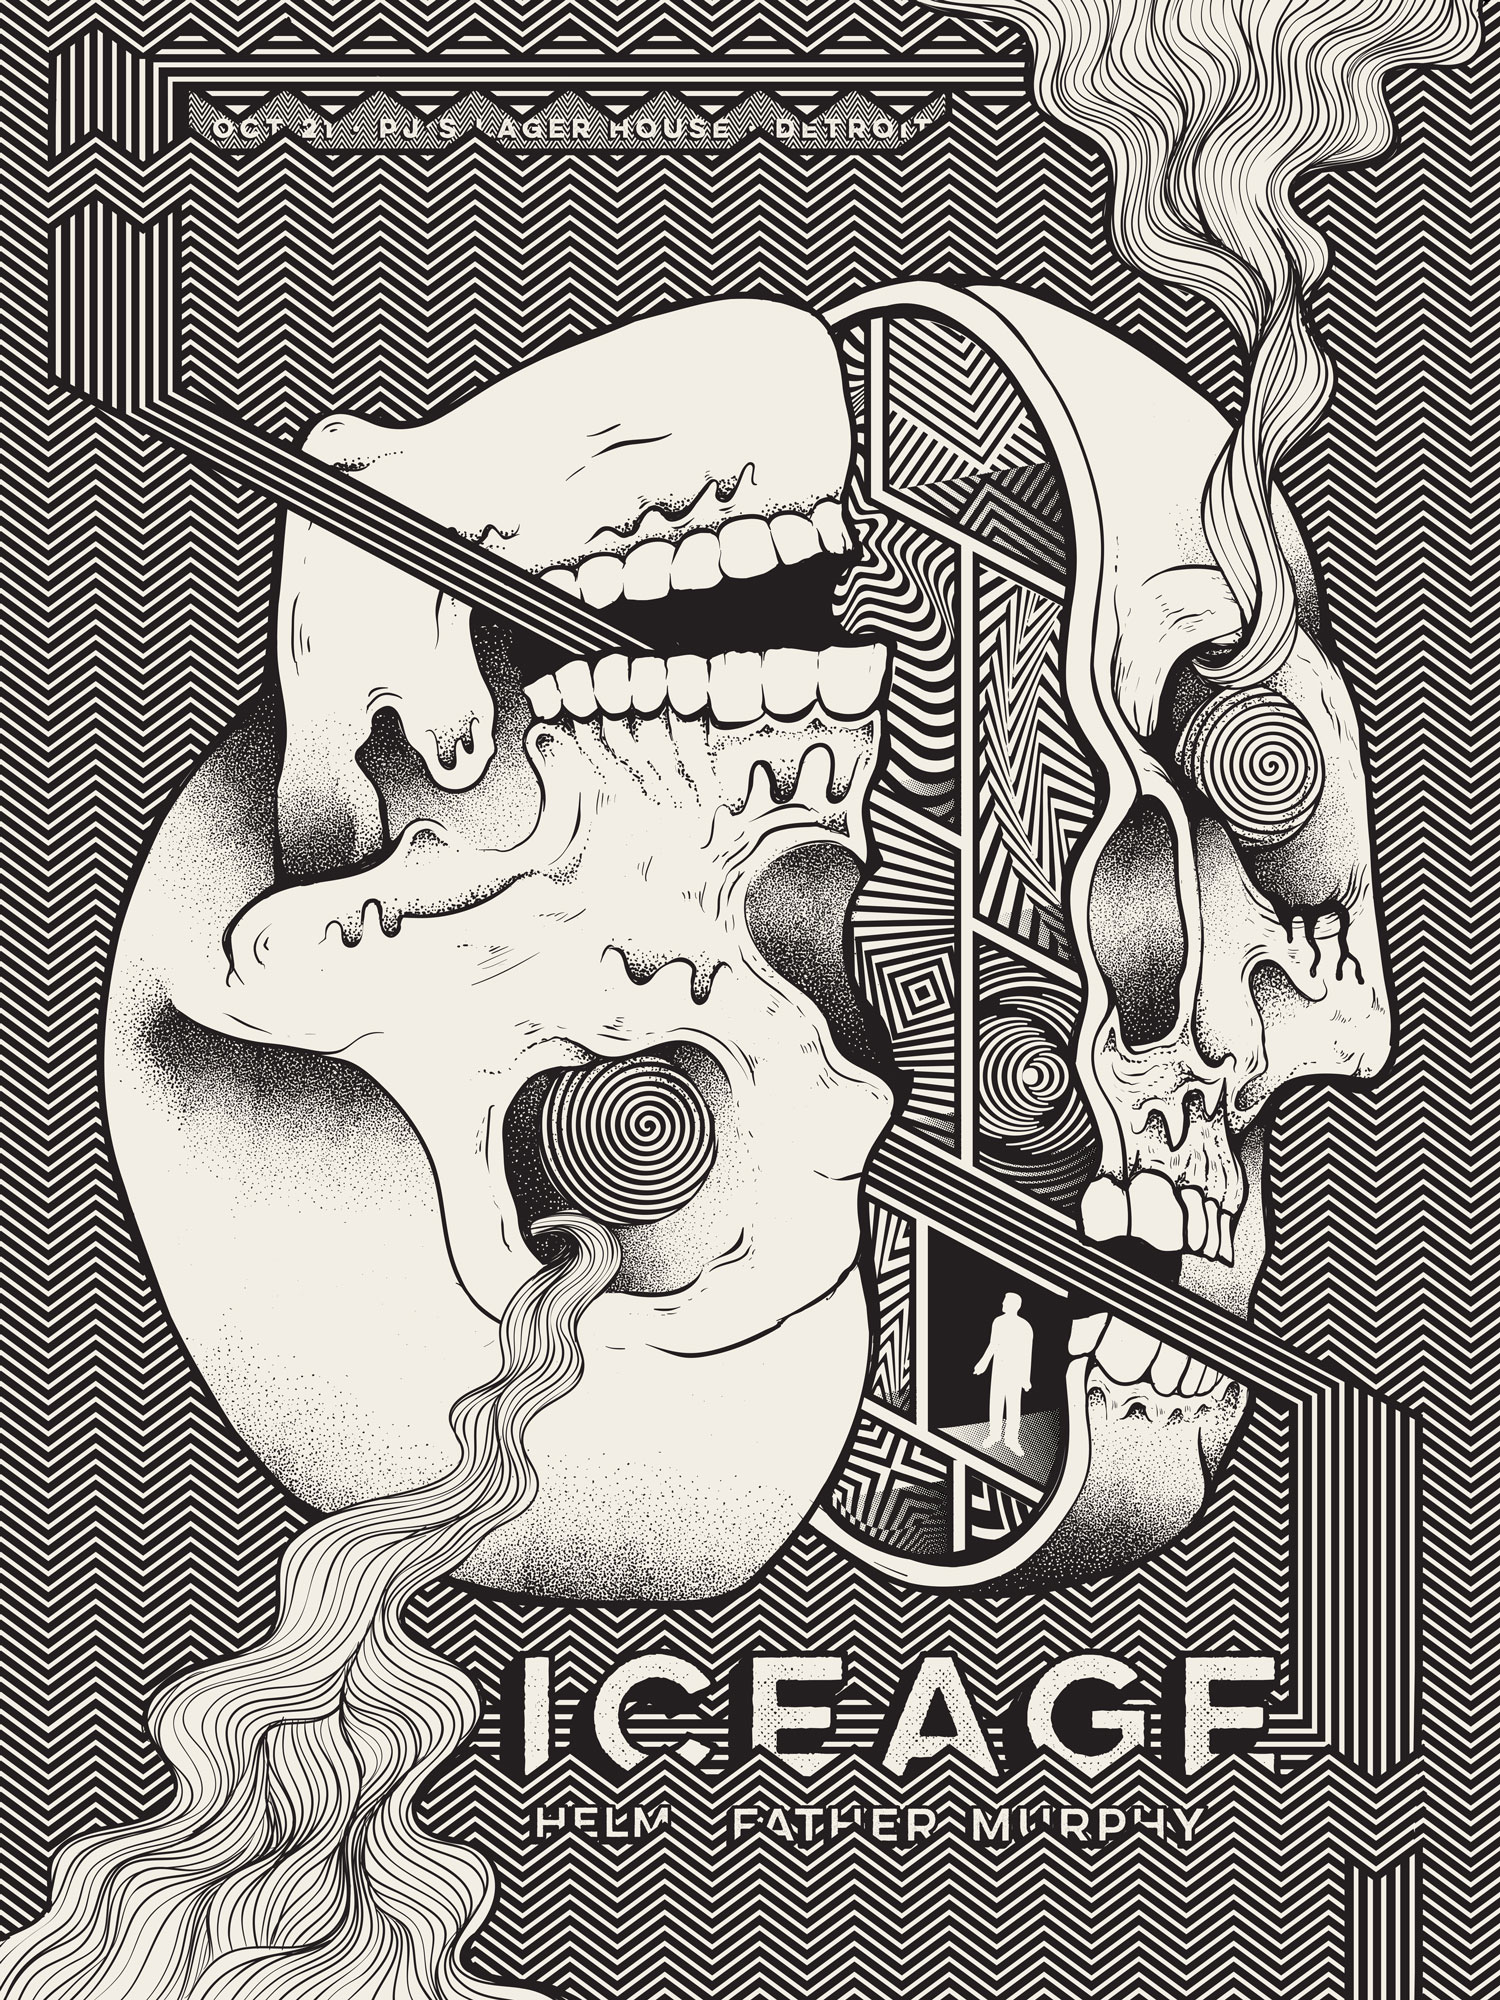 iceage_final_art.jpg